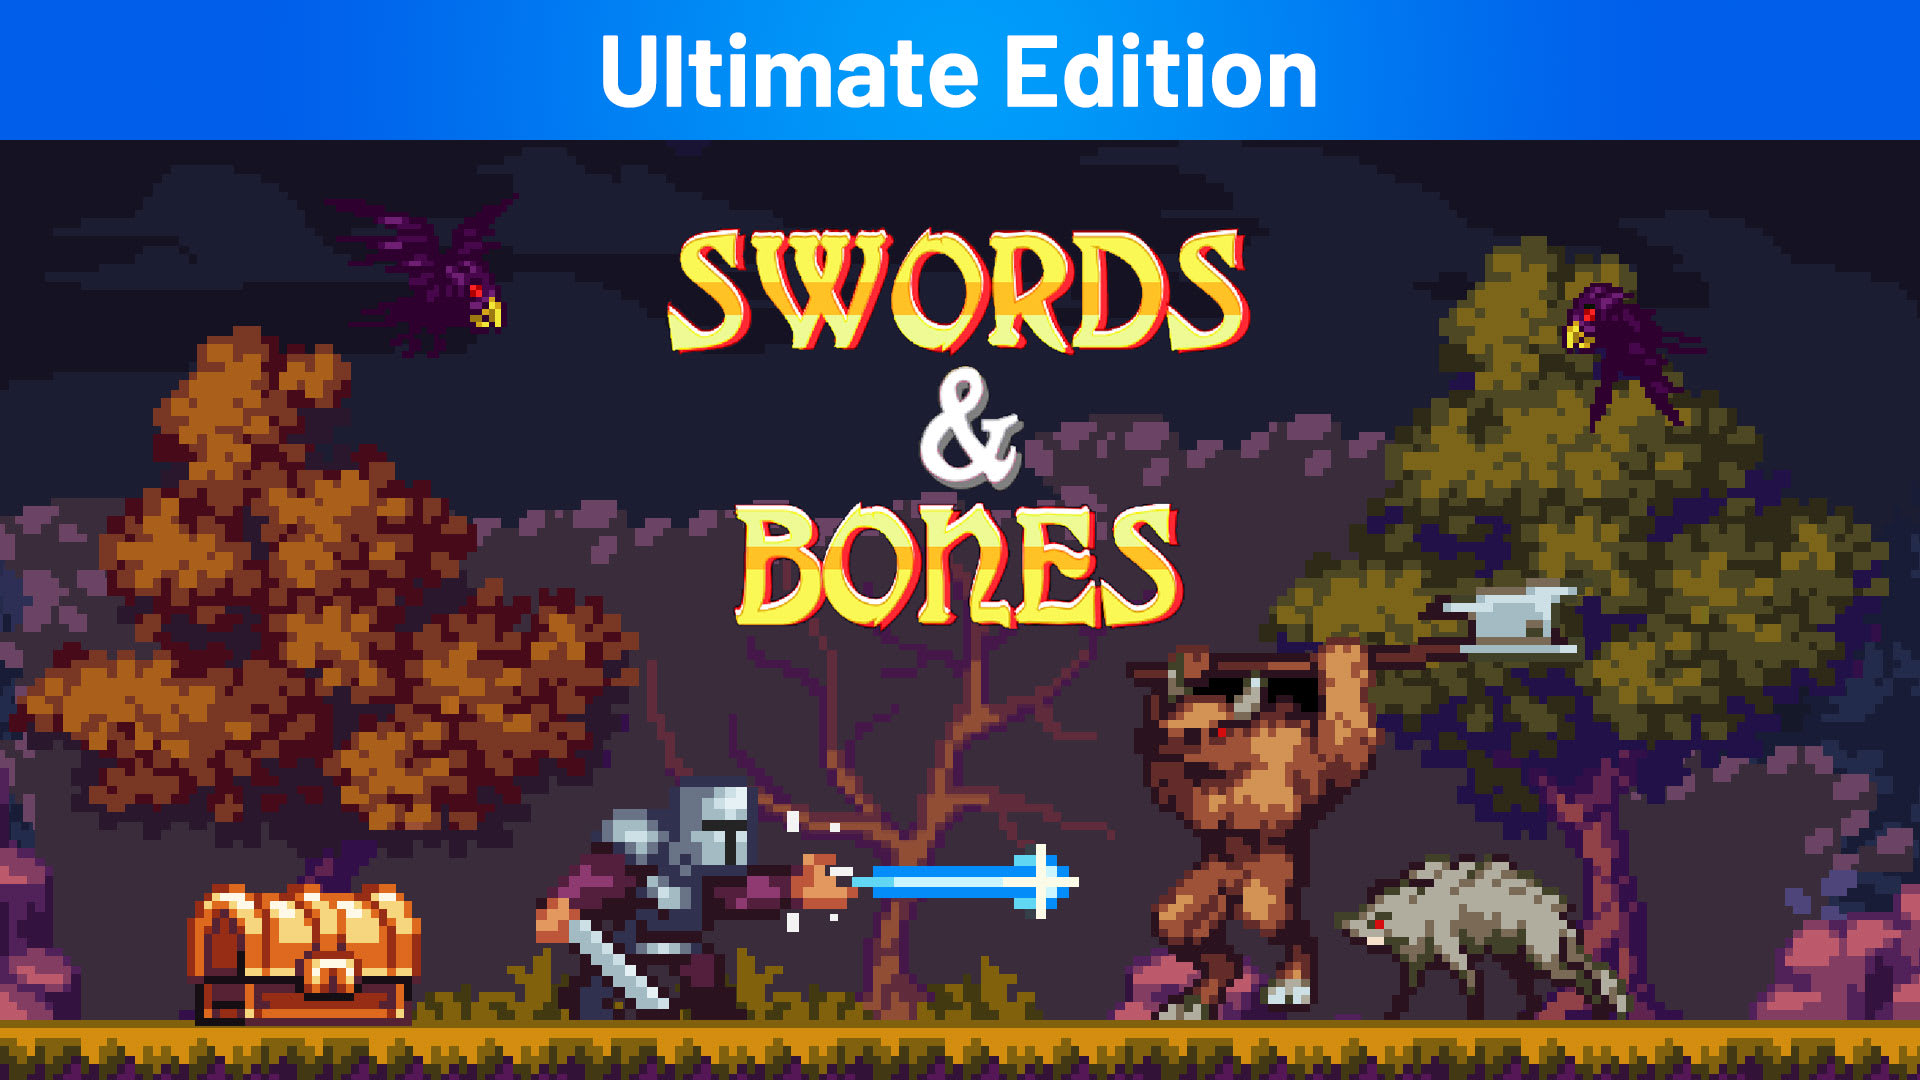 Swords & Bones Ultimate Edition